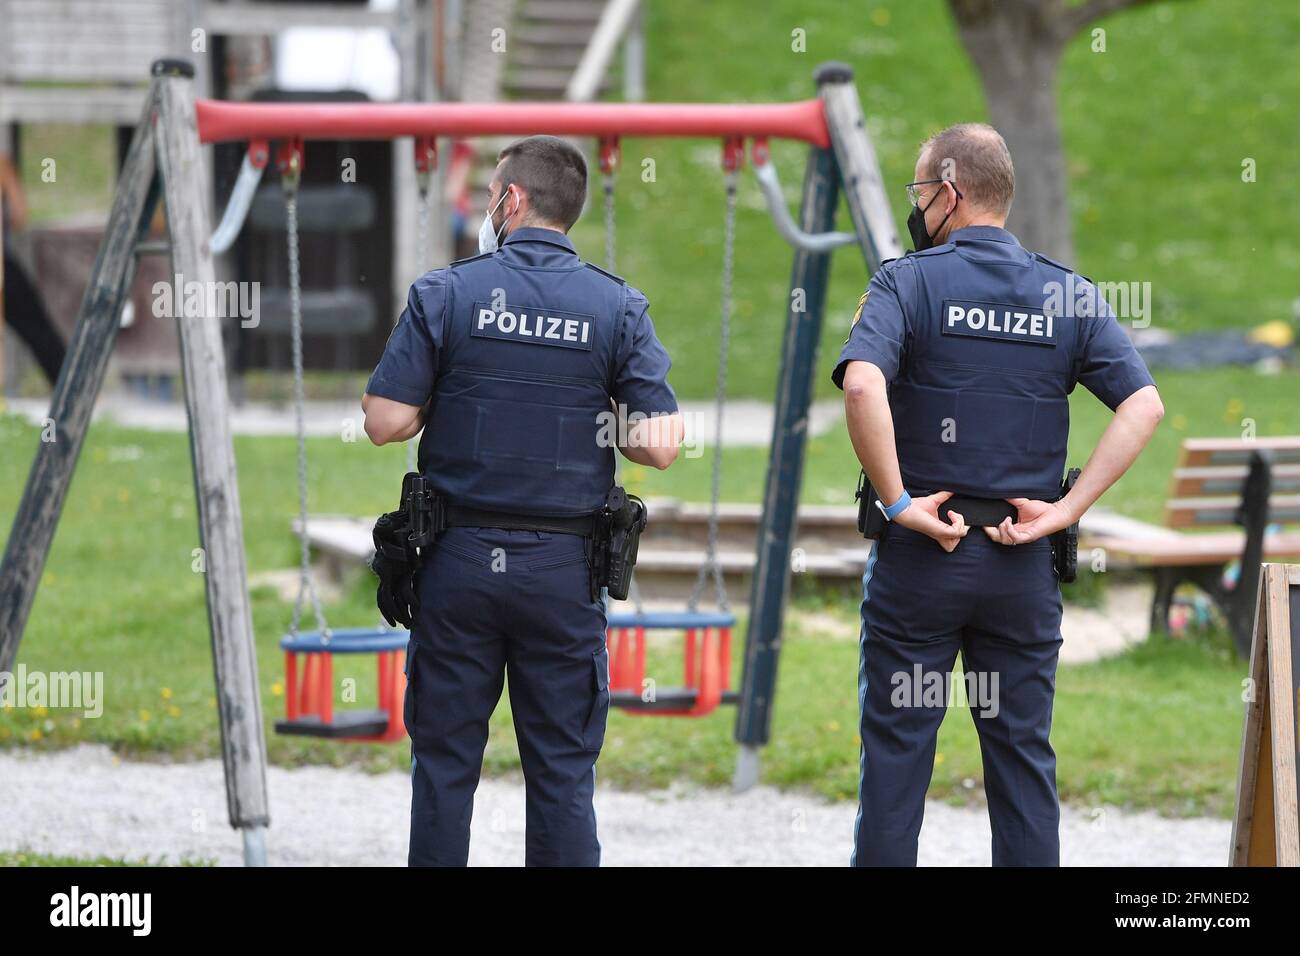 Foto a tema PARCO GIOCHI PER BAMBINI il 10 maggio 2021 a Kaufering, 2 poliziotti in uniforme guardia un parco giochi. | utilizzo in tutto il mondo Foto Stock